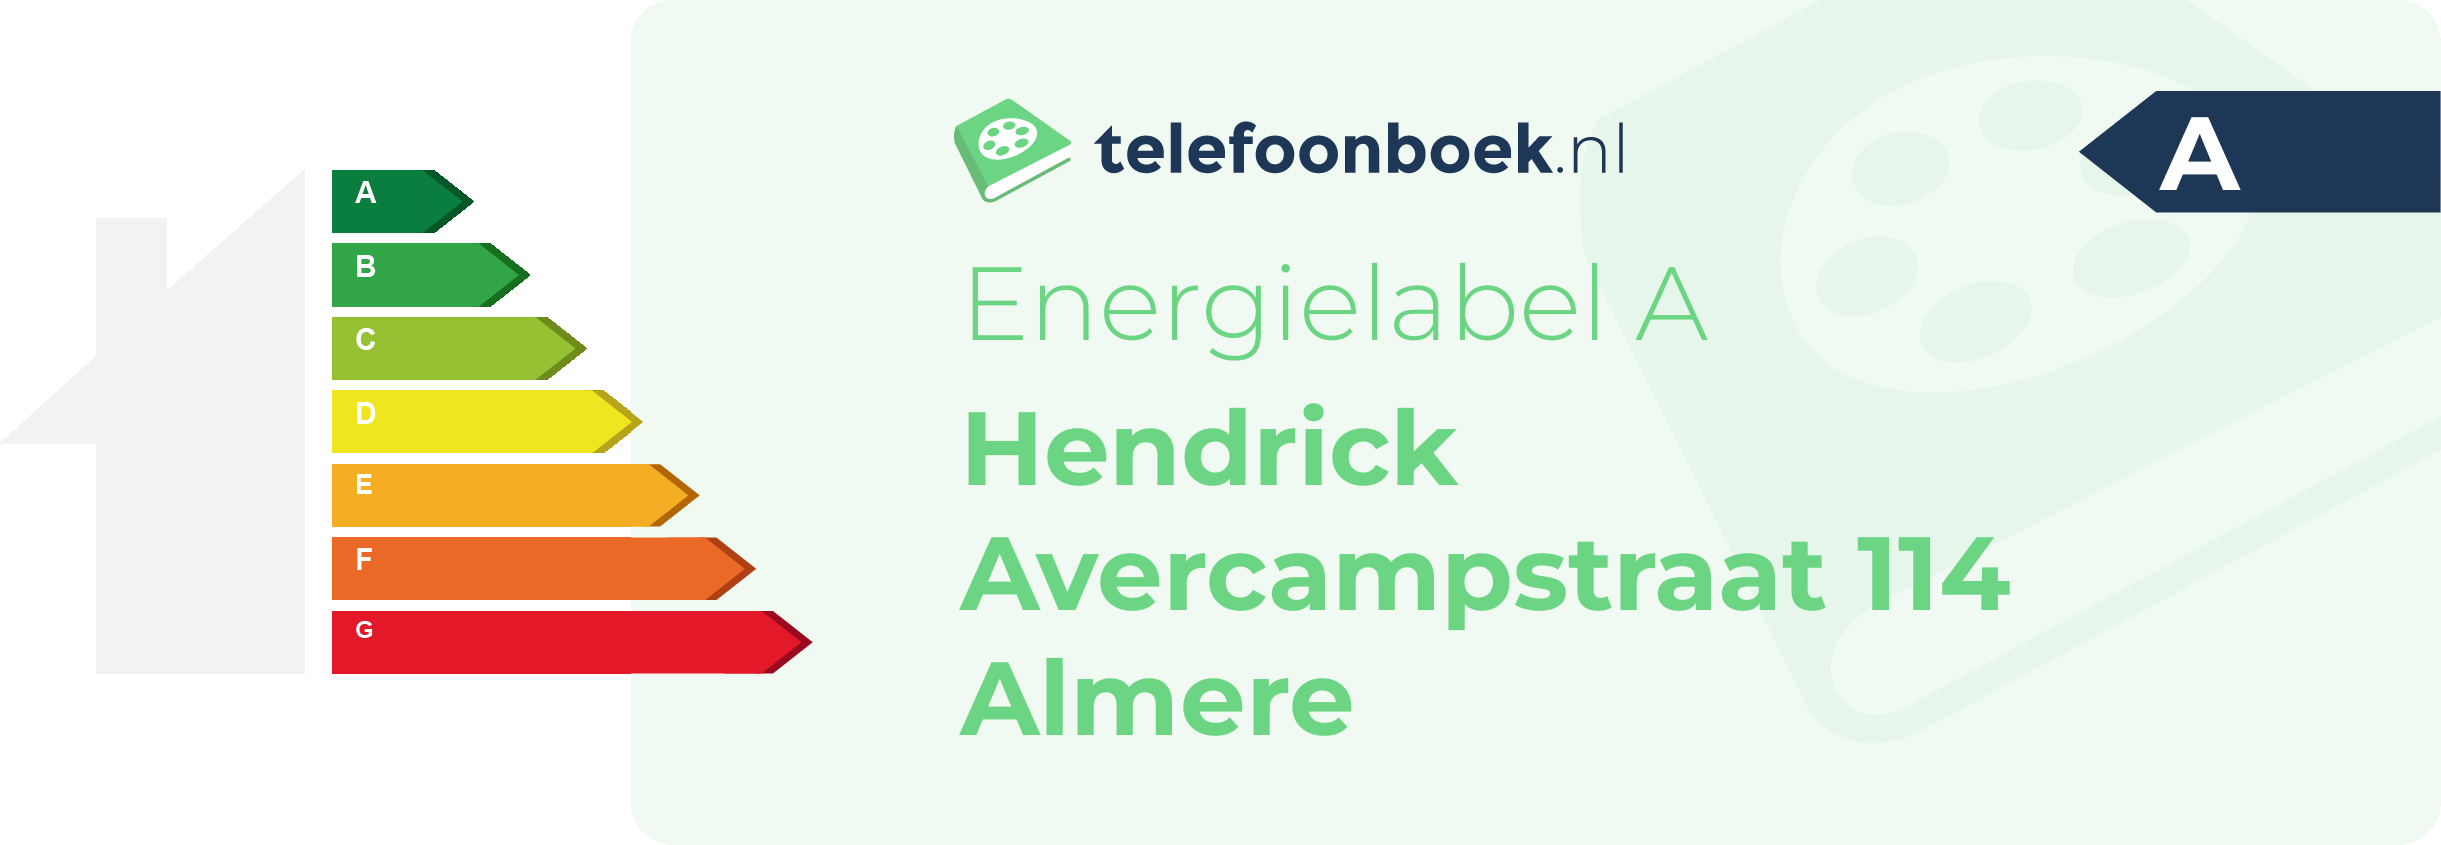 Energielabel Hendrick Avercampstraat 114 Almere